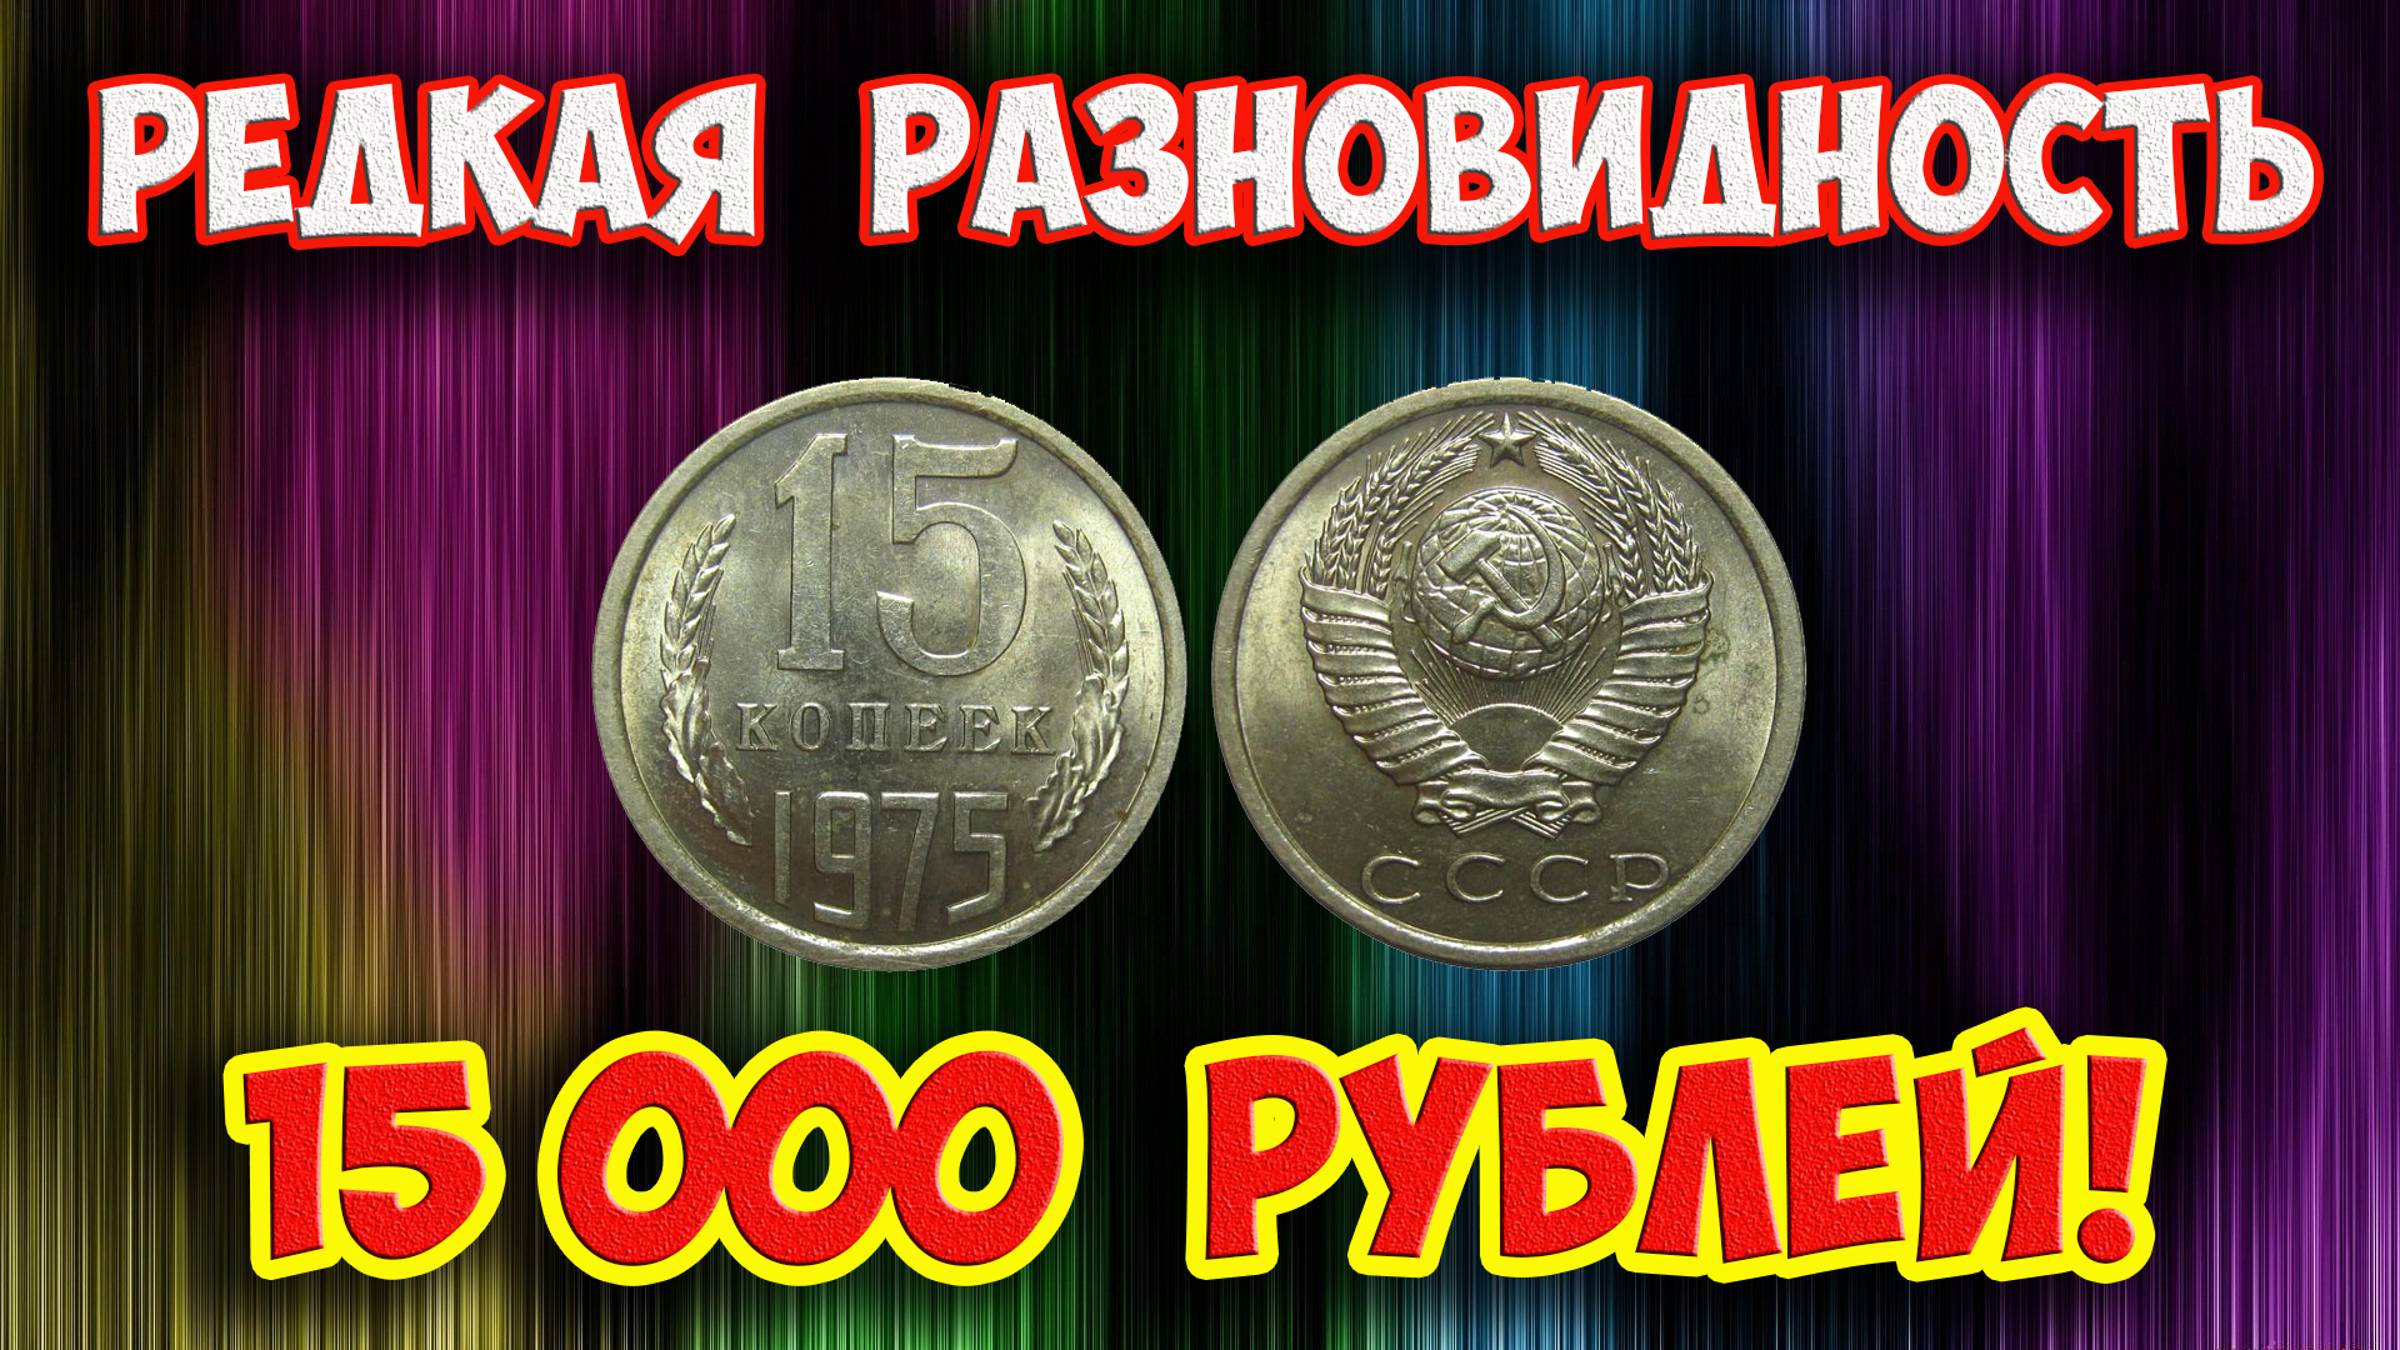 Стоимость редких монет. Как распознать дорогие монеты СССР достоинством 15 копеек 1975 года.